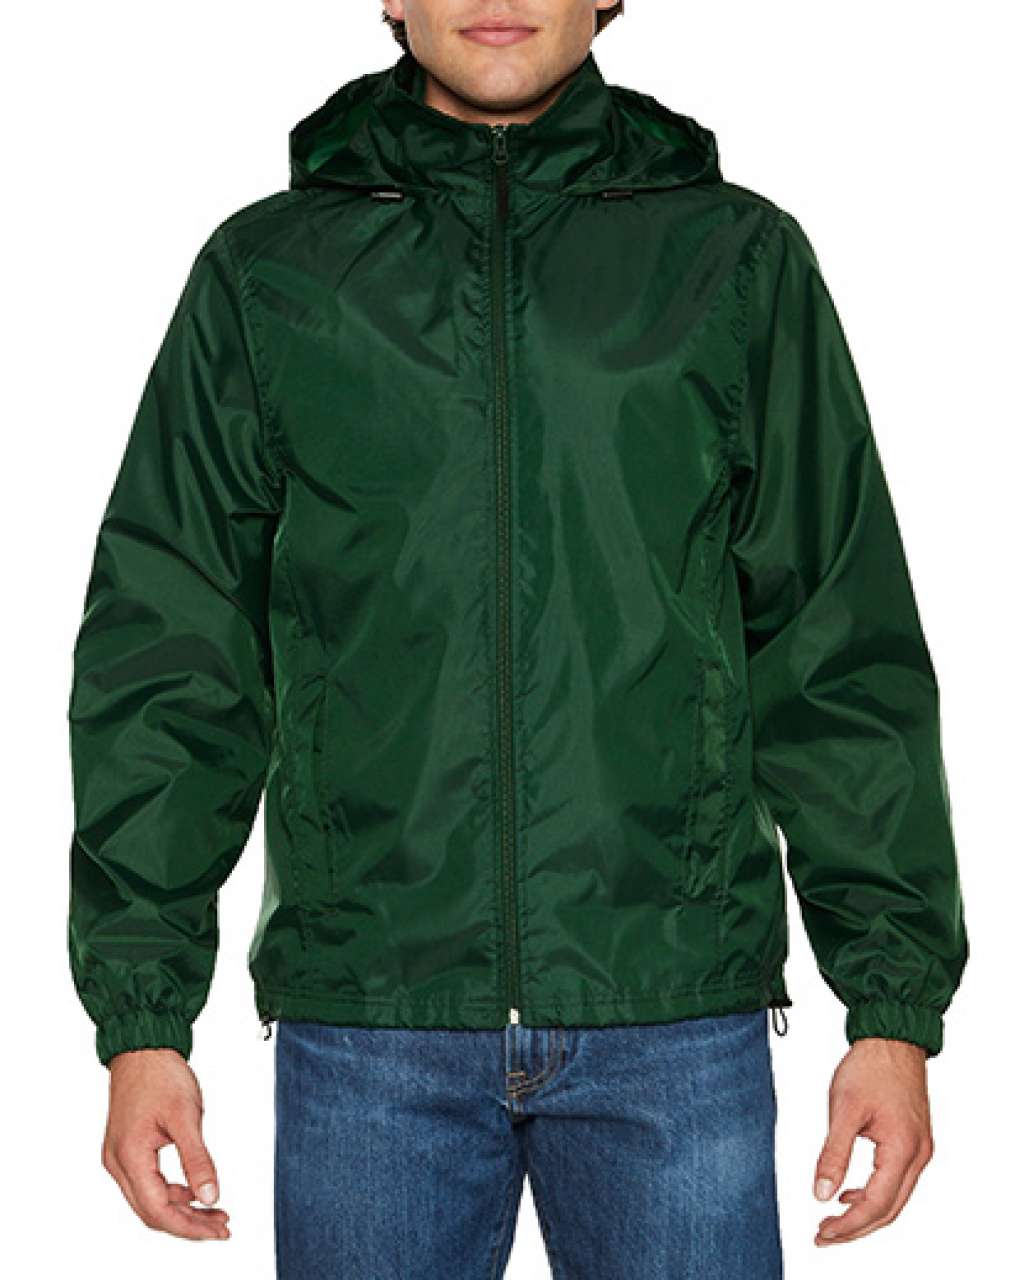 Gildan Hammer Unisex Windwear Jacket - Gildan Hammer Unisex Windwear Jacket - Forest Green